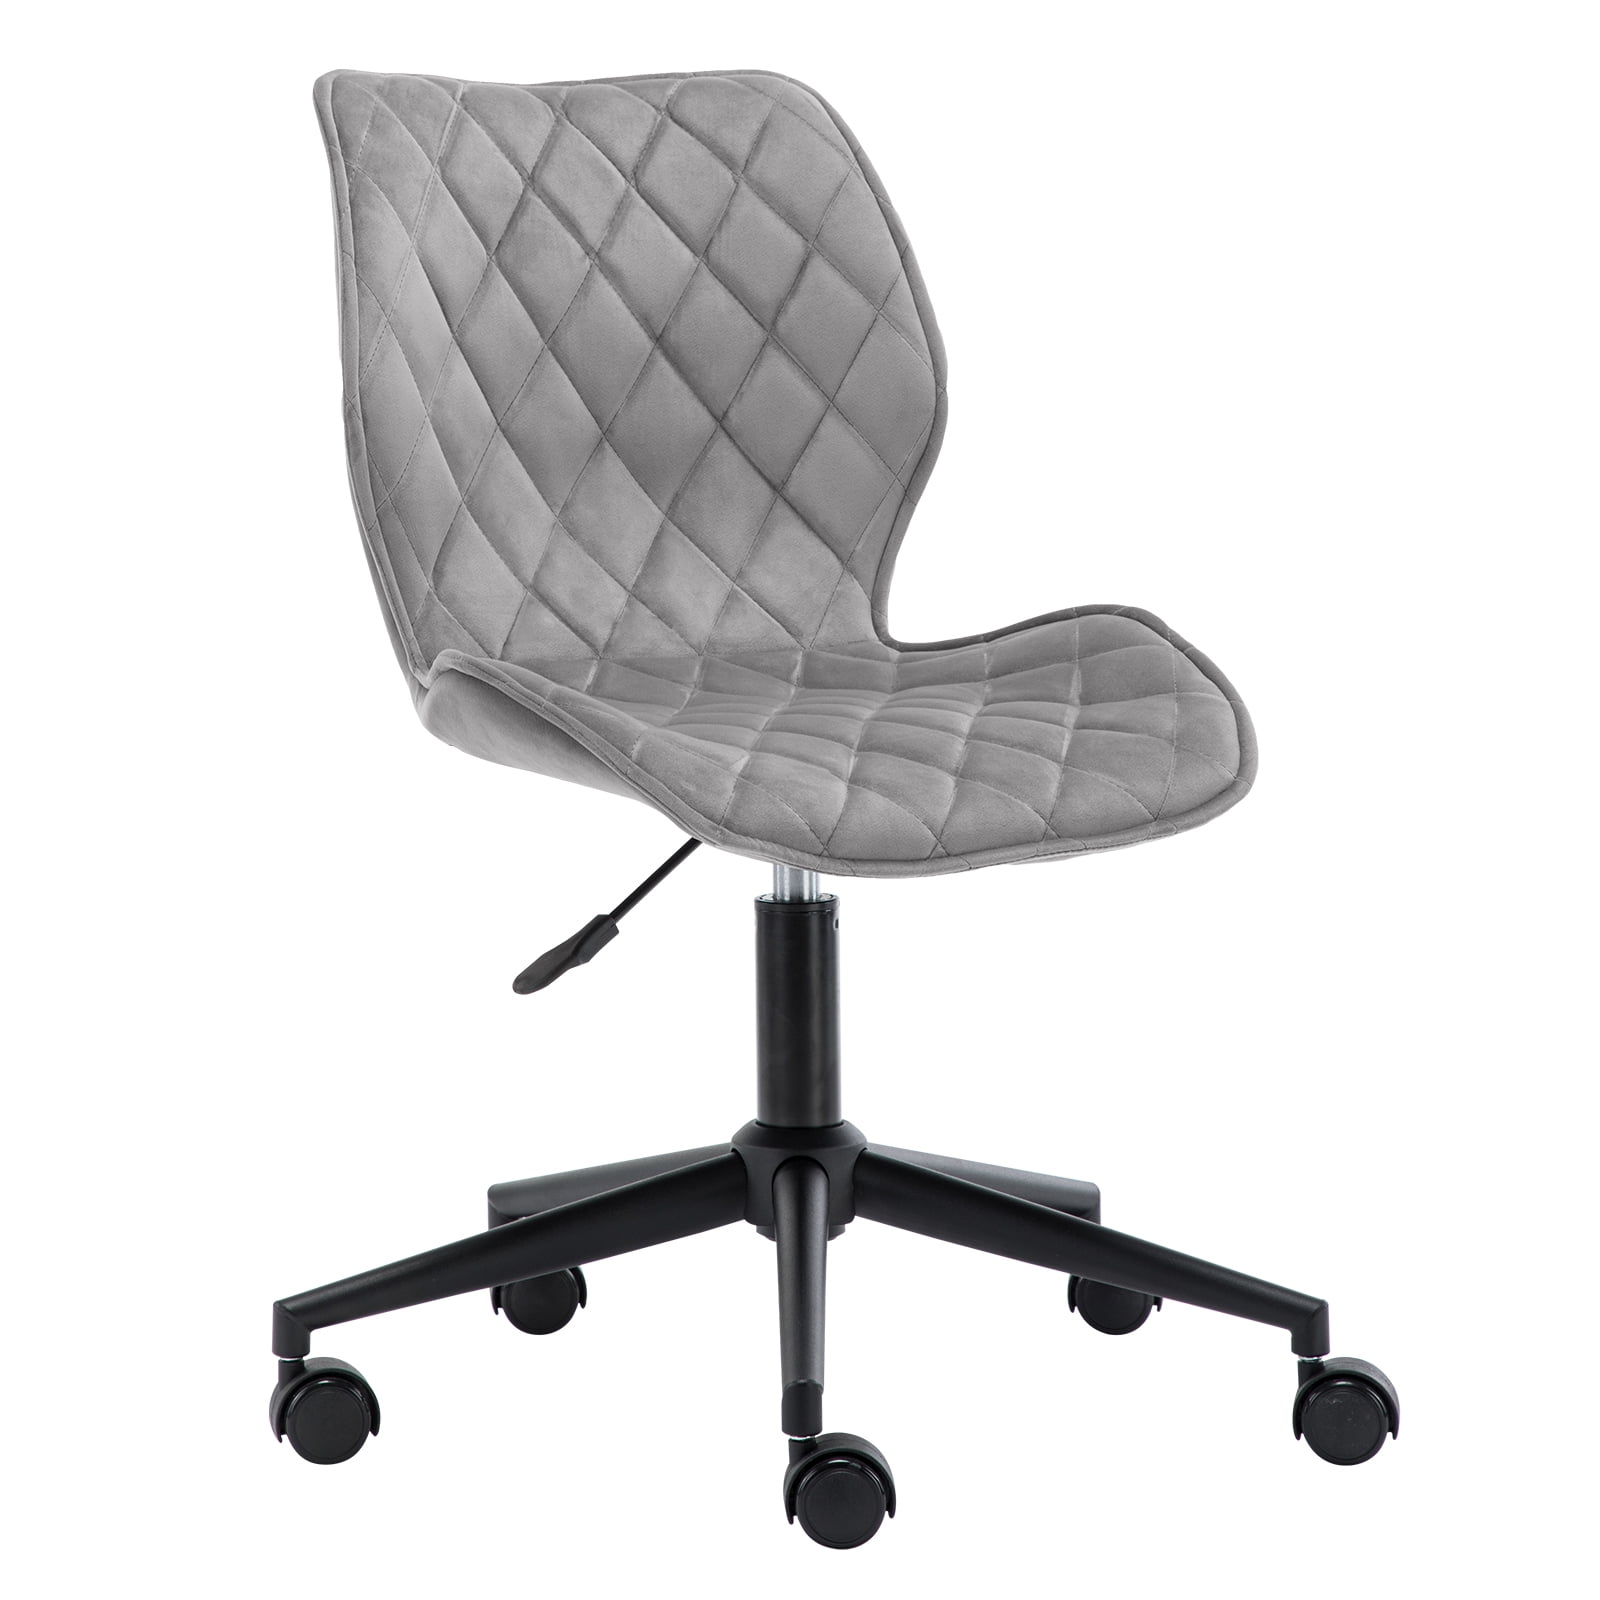 Swivel Velvet Office Chair Home Computer Desk Chair Ergonomic Adjustable Grey UK 